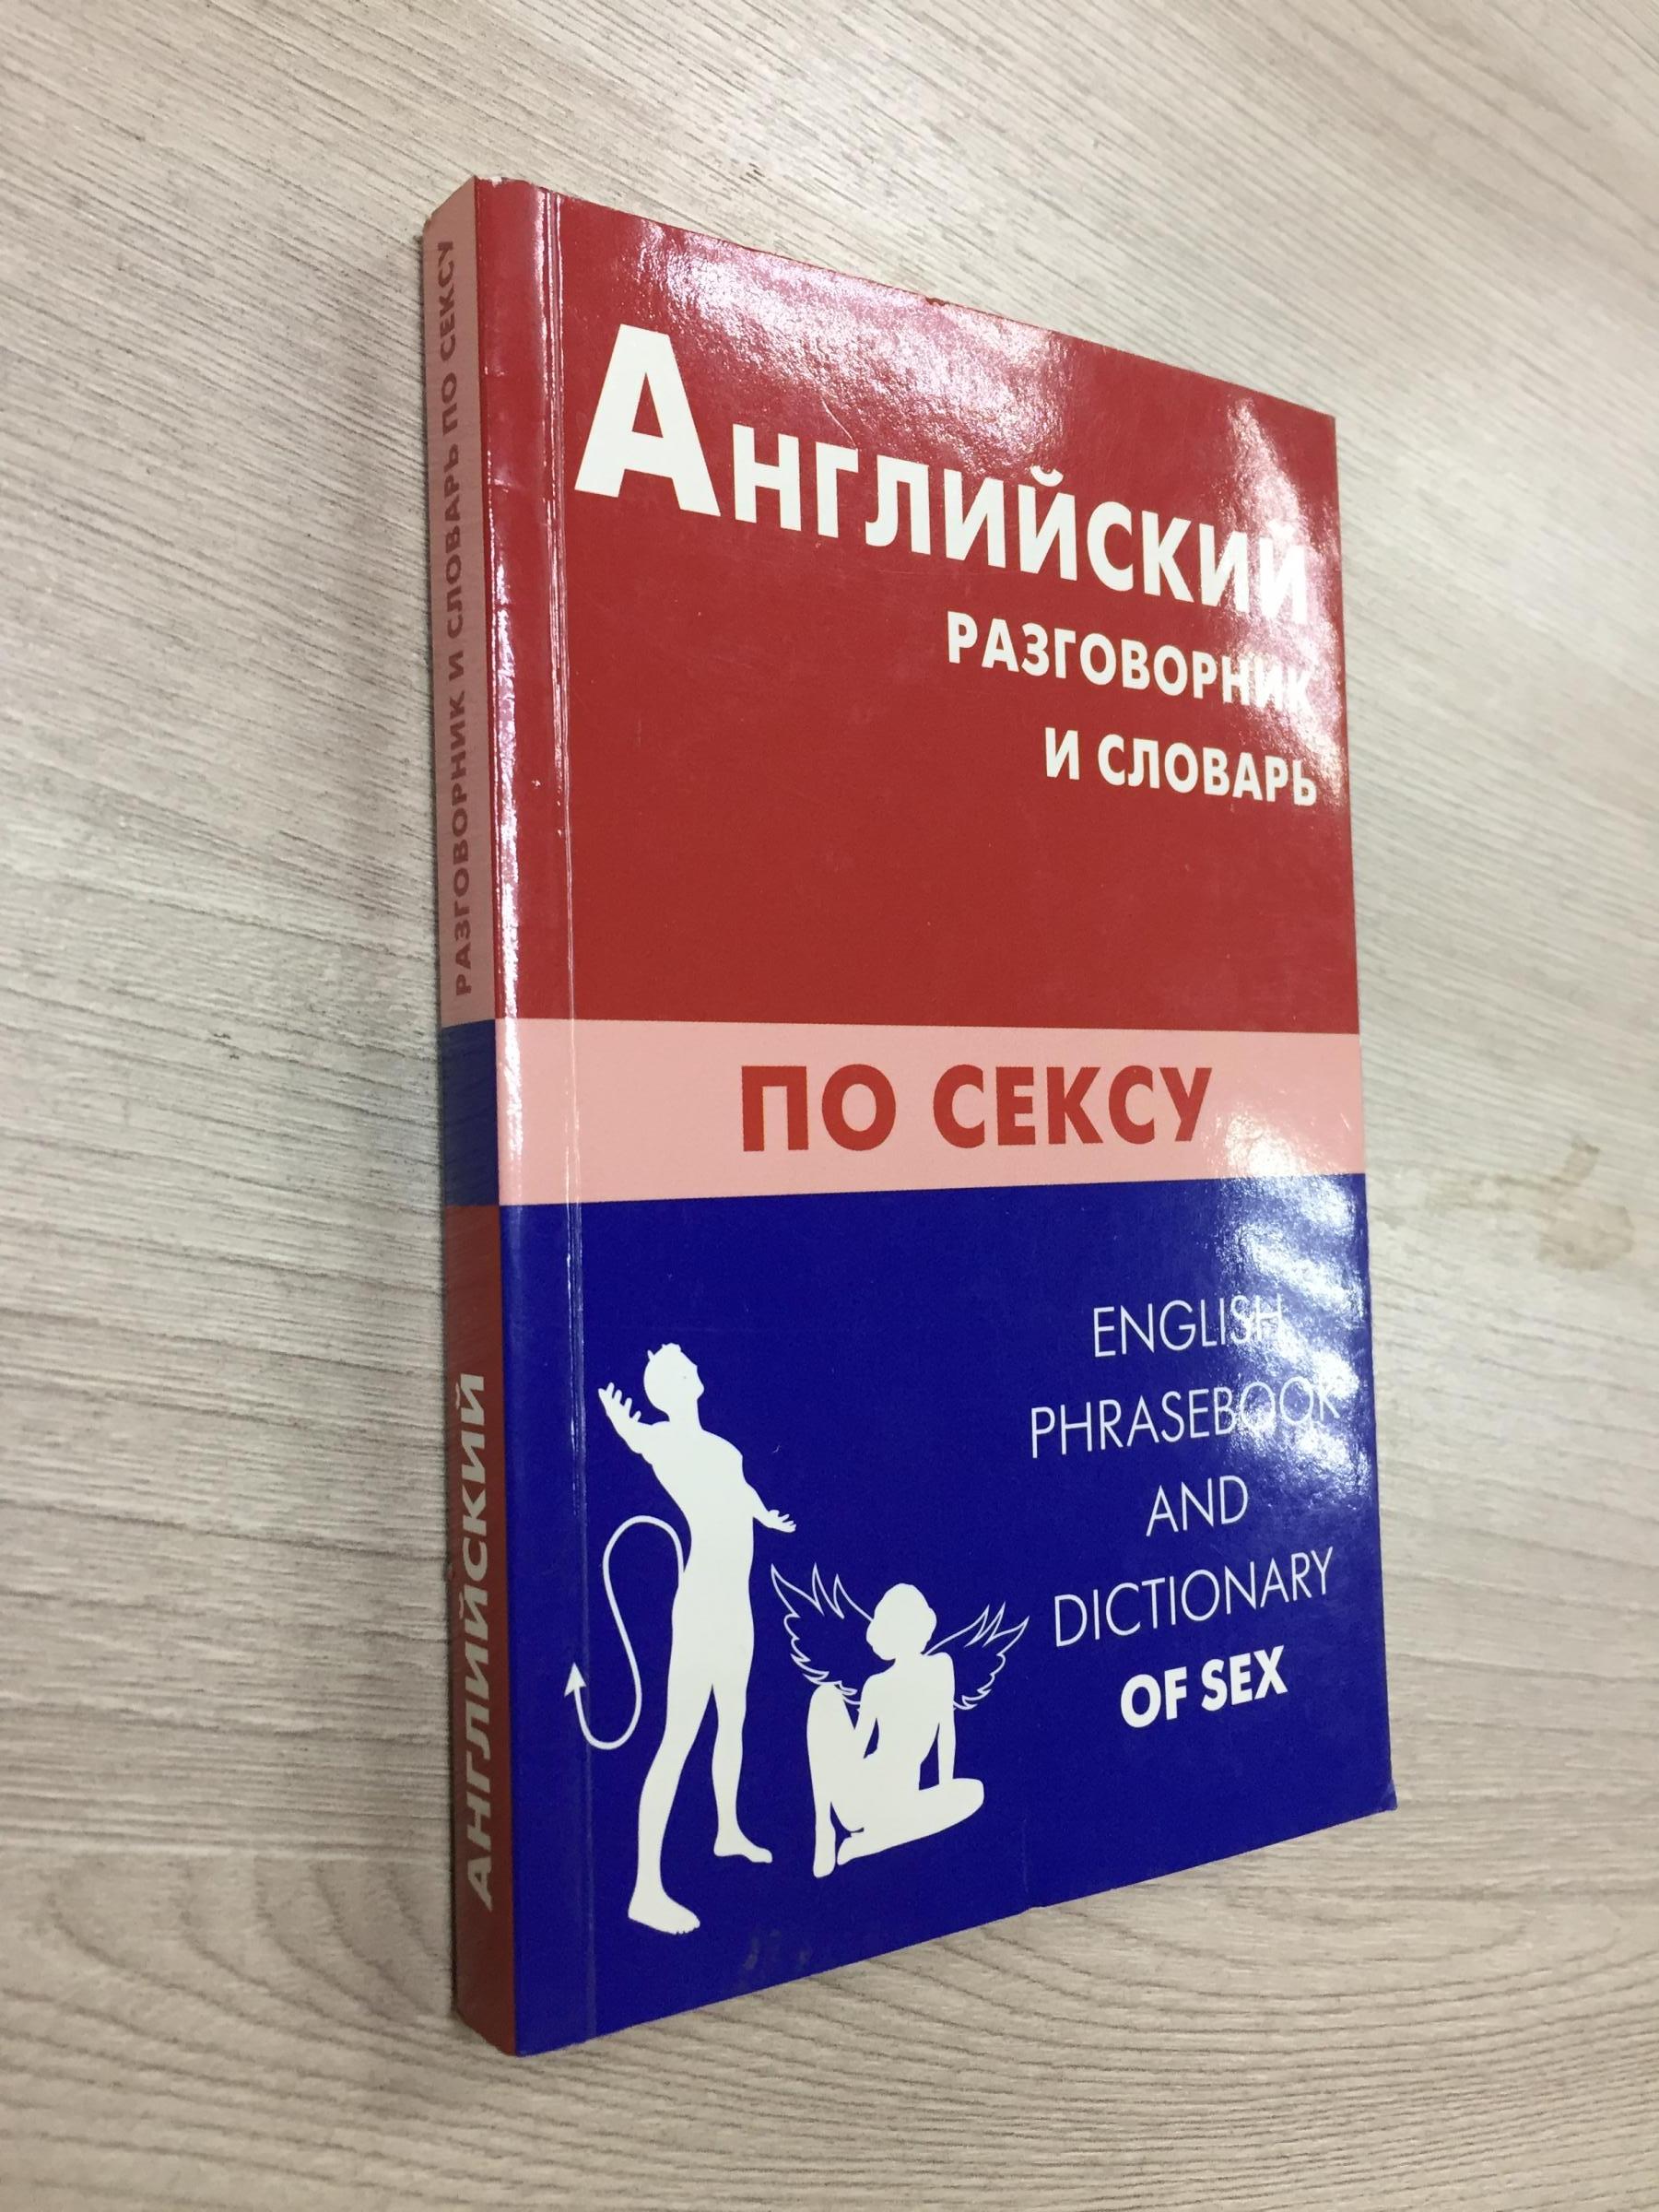 Перевод «prostitute» в англо-русском словаре